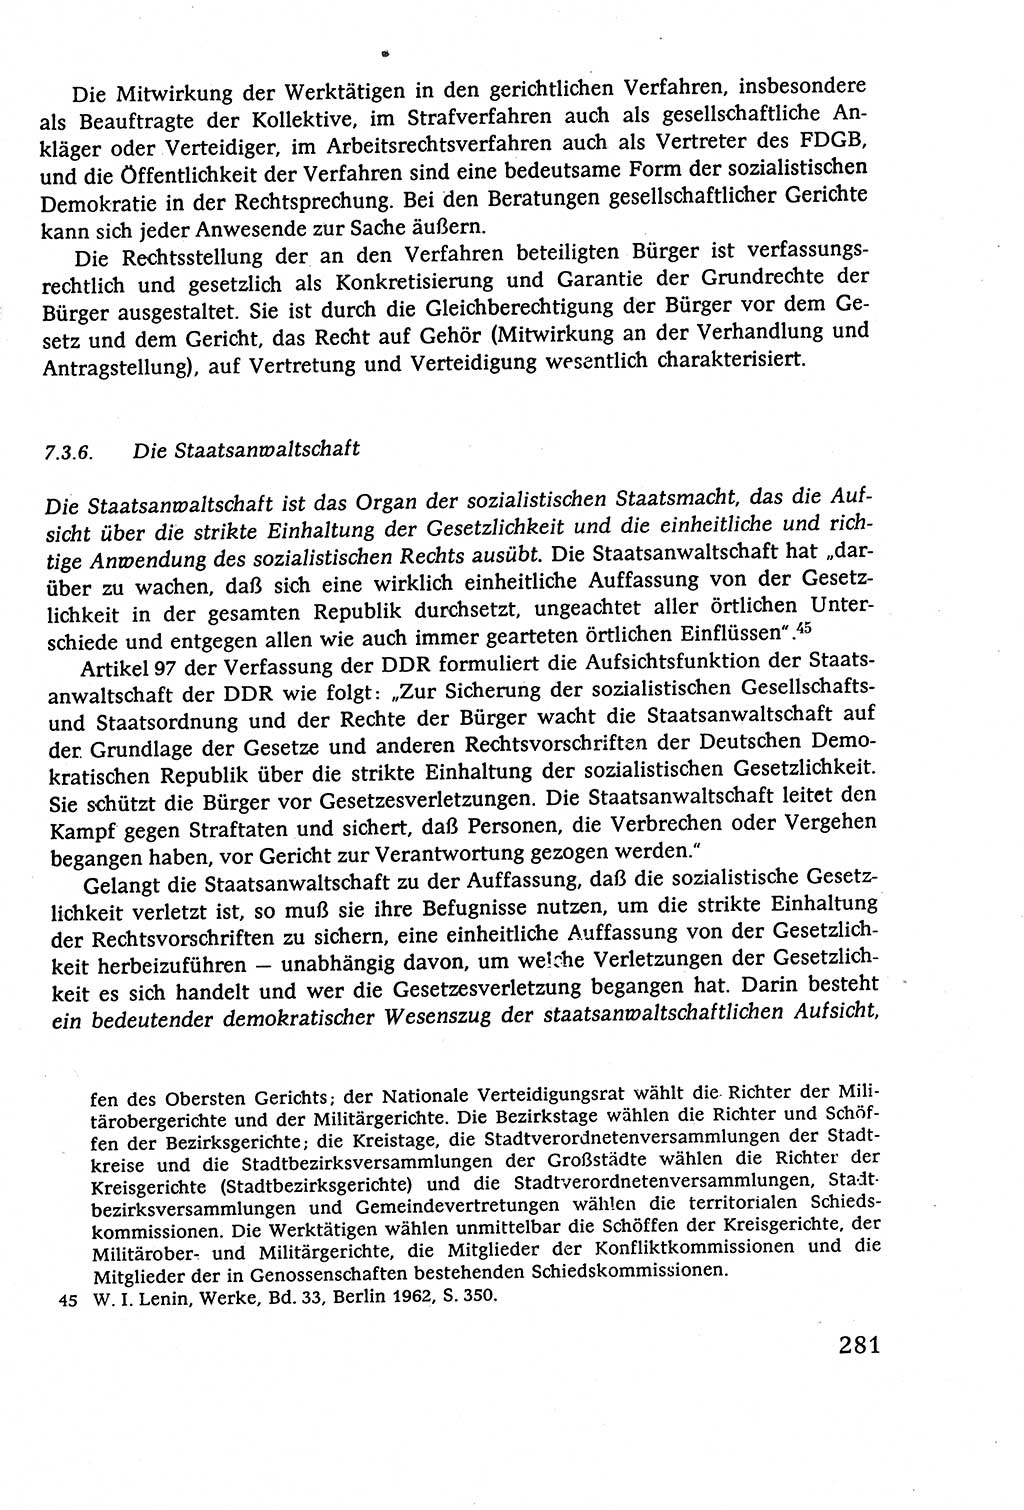 Staatsrecht der DDR (Deutsche Demokratische Republik), Lehrbuch 1977, Seite 281 (St.-R. DDR Lb. 1977, S. 281)